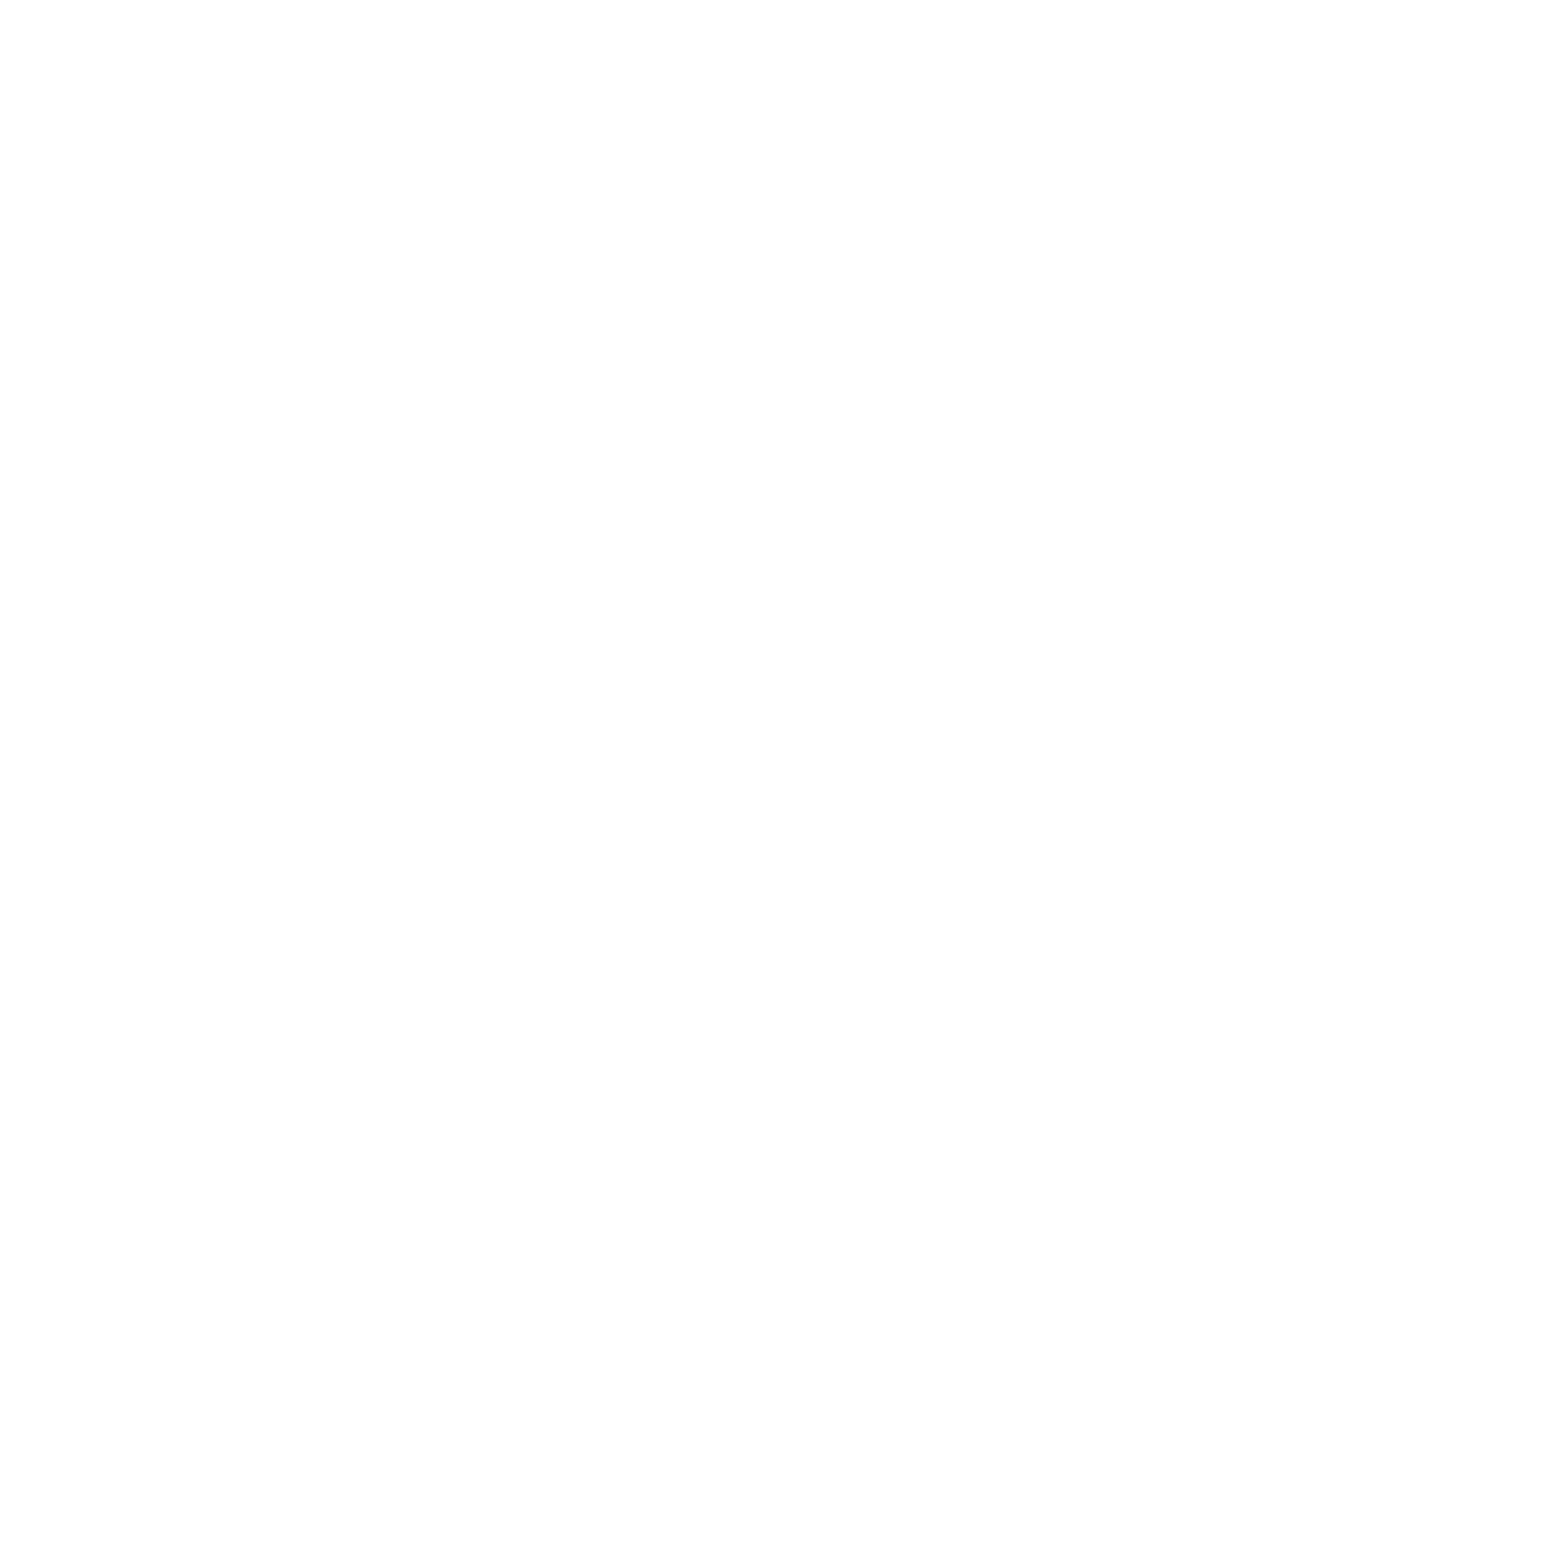 Agilon Health logo for dark backgrounds (transparent PNG)